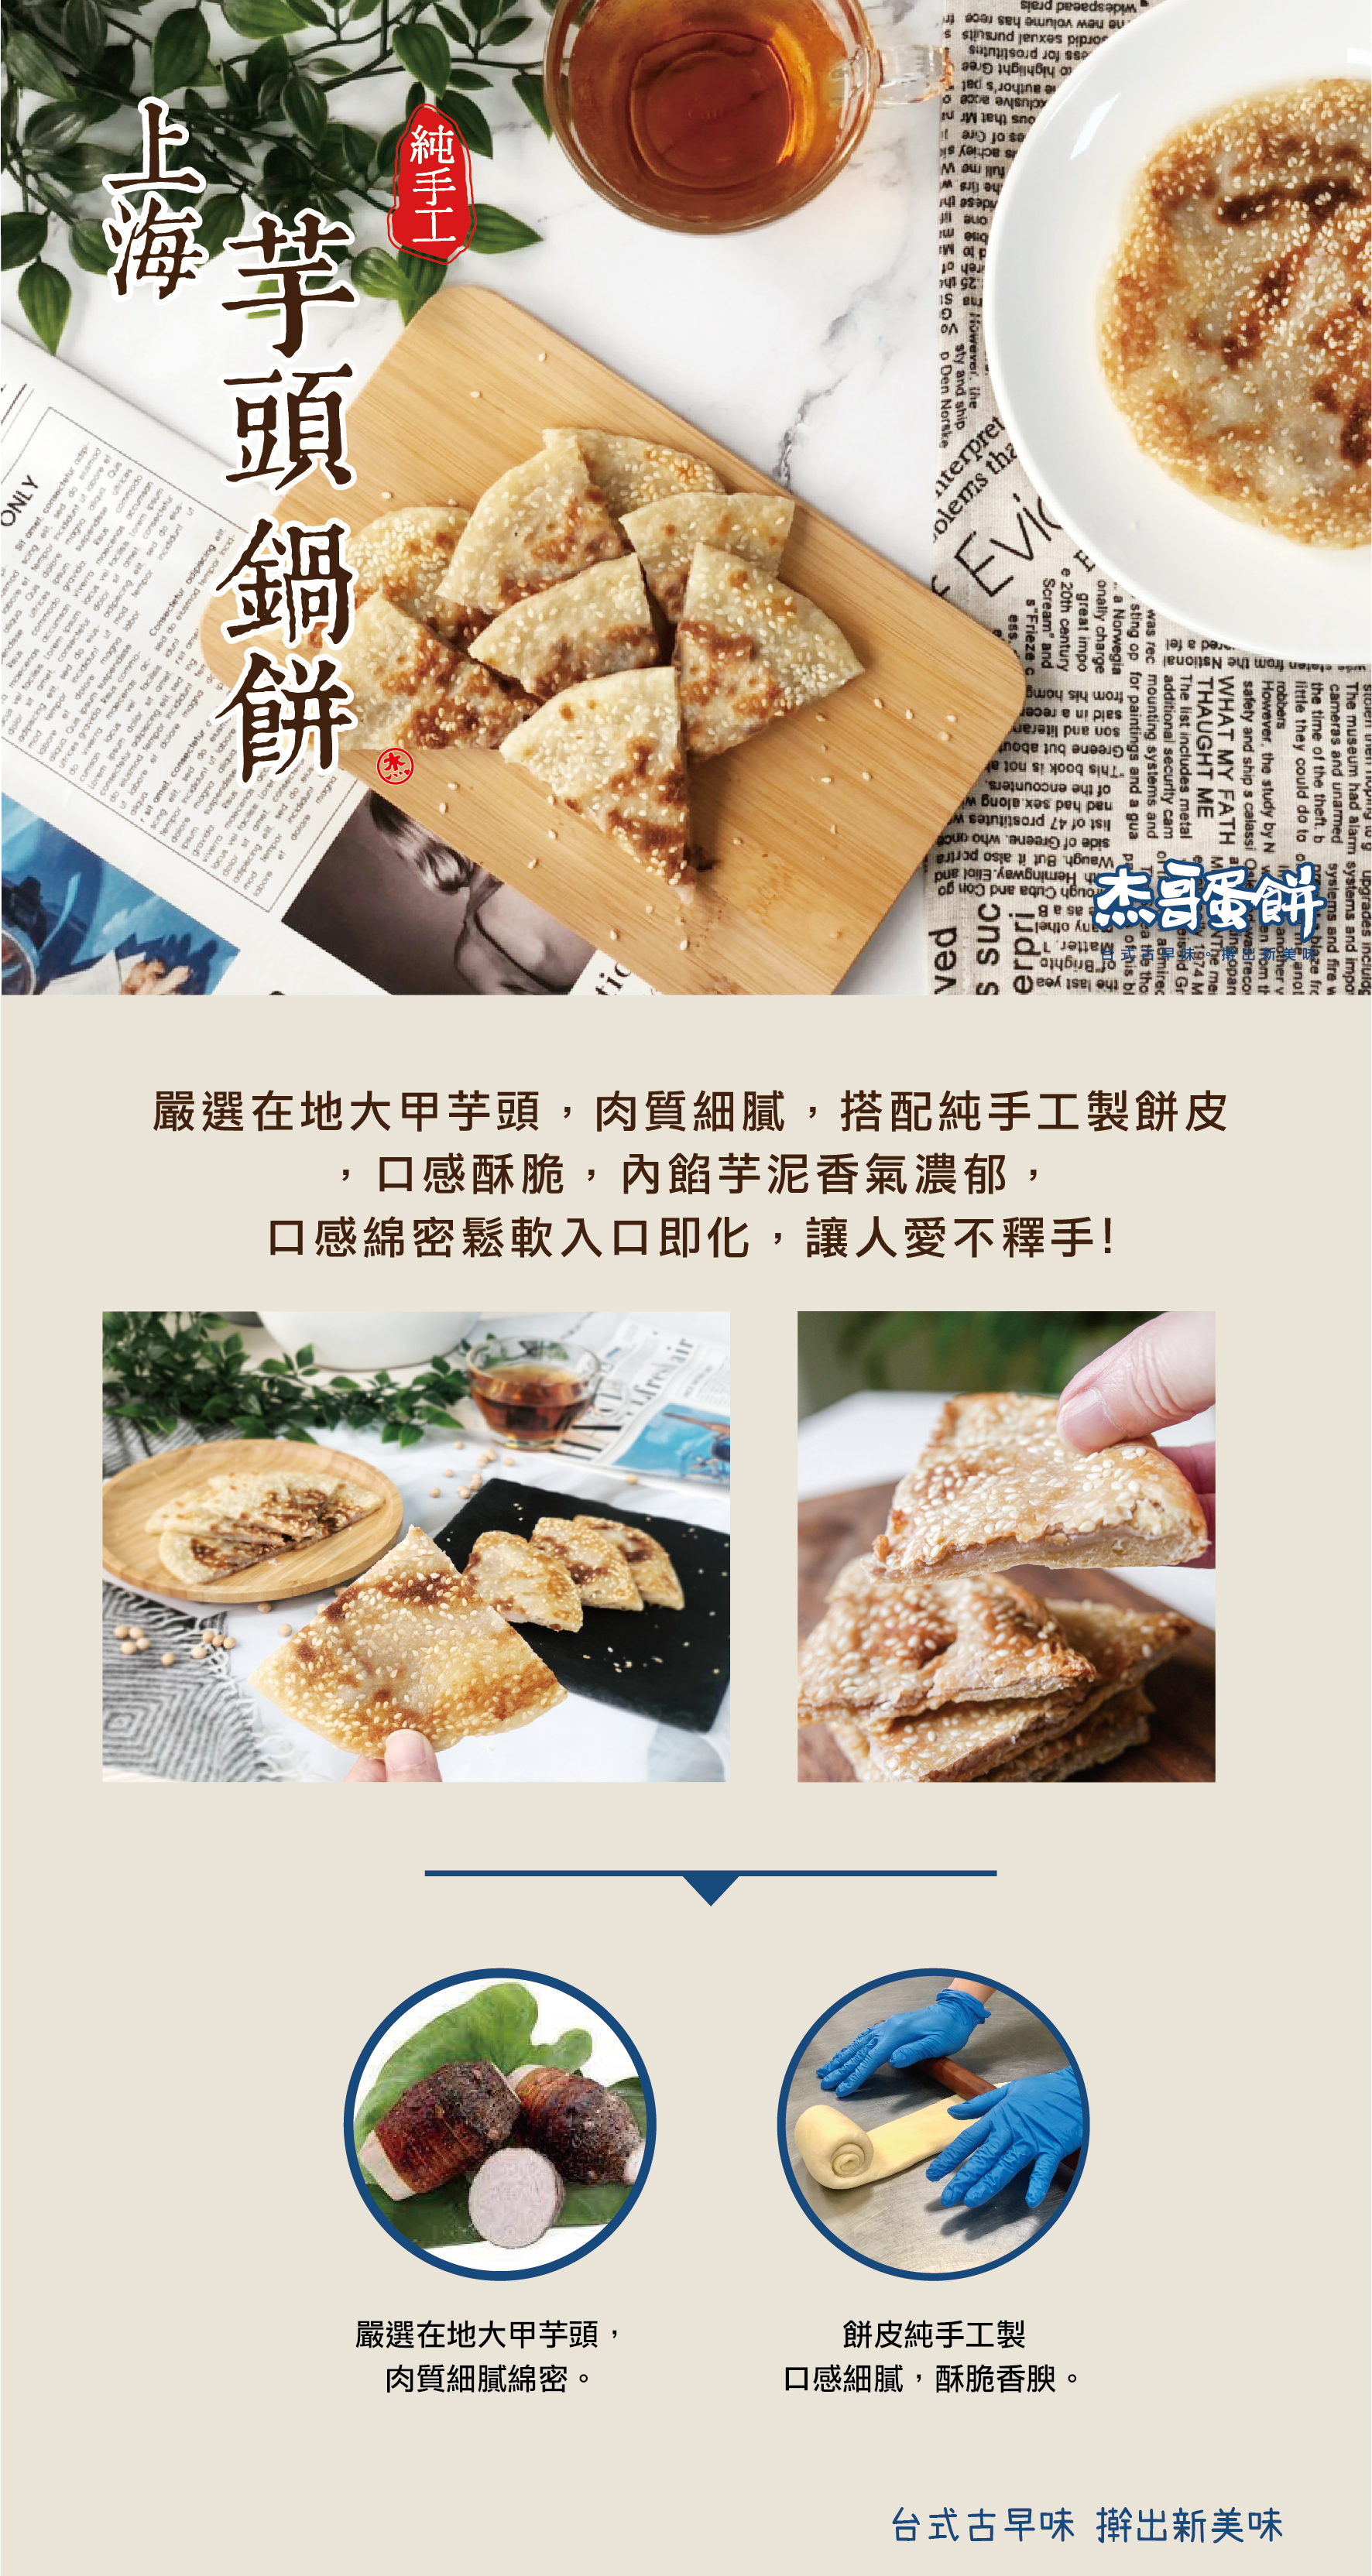 【杰哥蛋餅】手工酥脆上海鍋餅任選360g(萬丹紅豆/芝麻/青蔥/大甲芋頭)